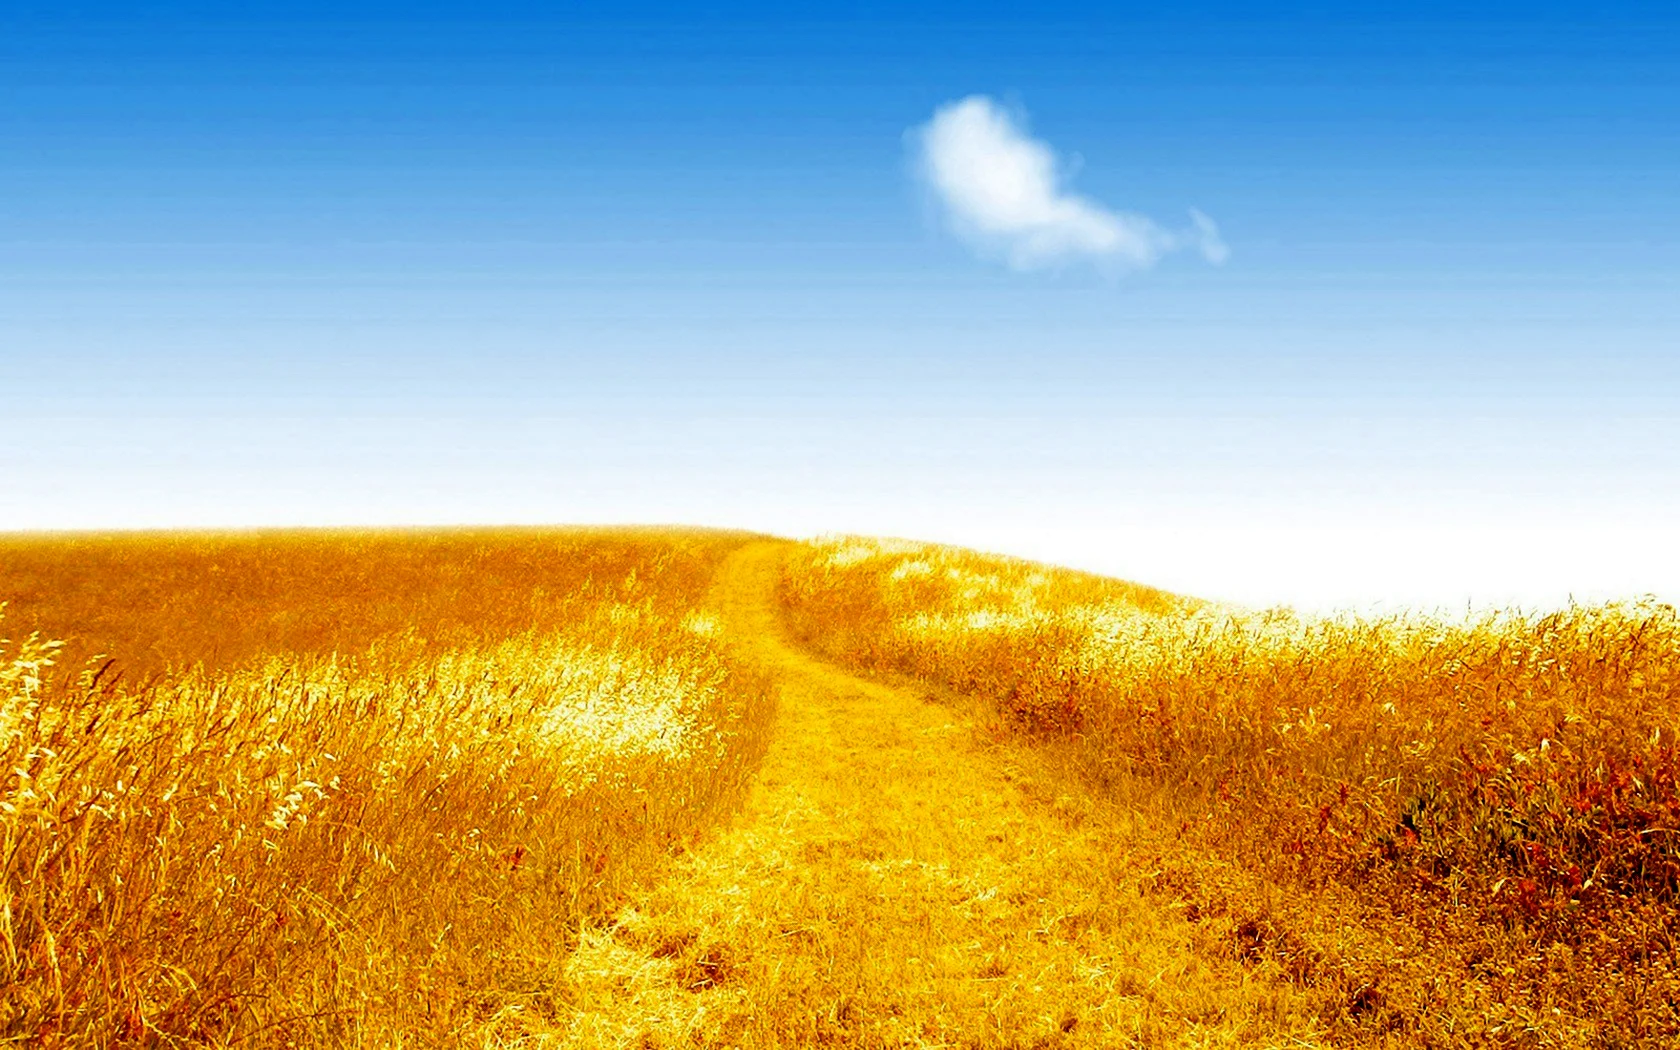 Дорога через пшеничное поле